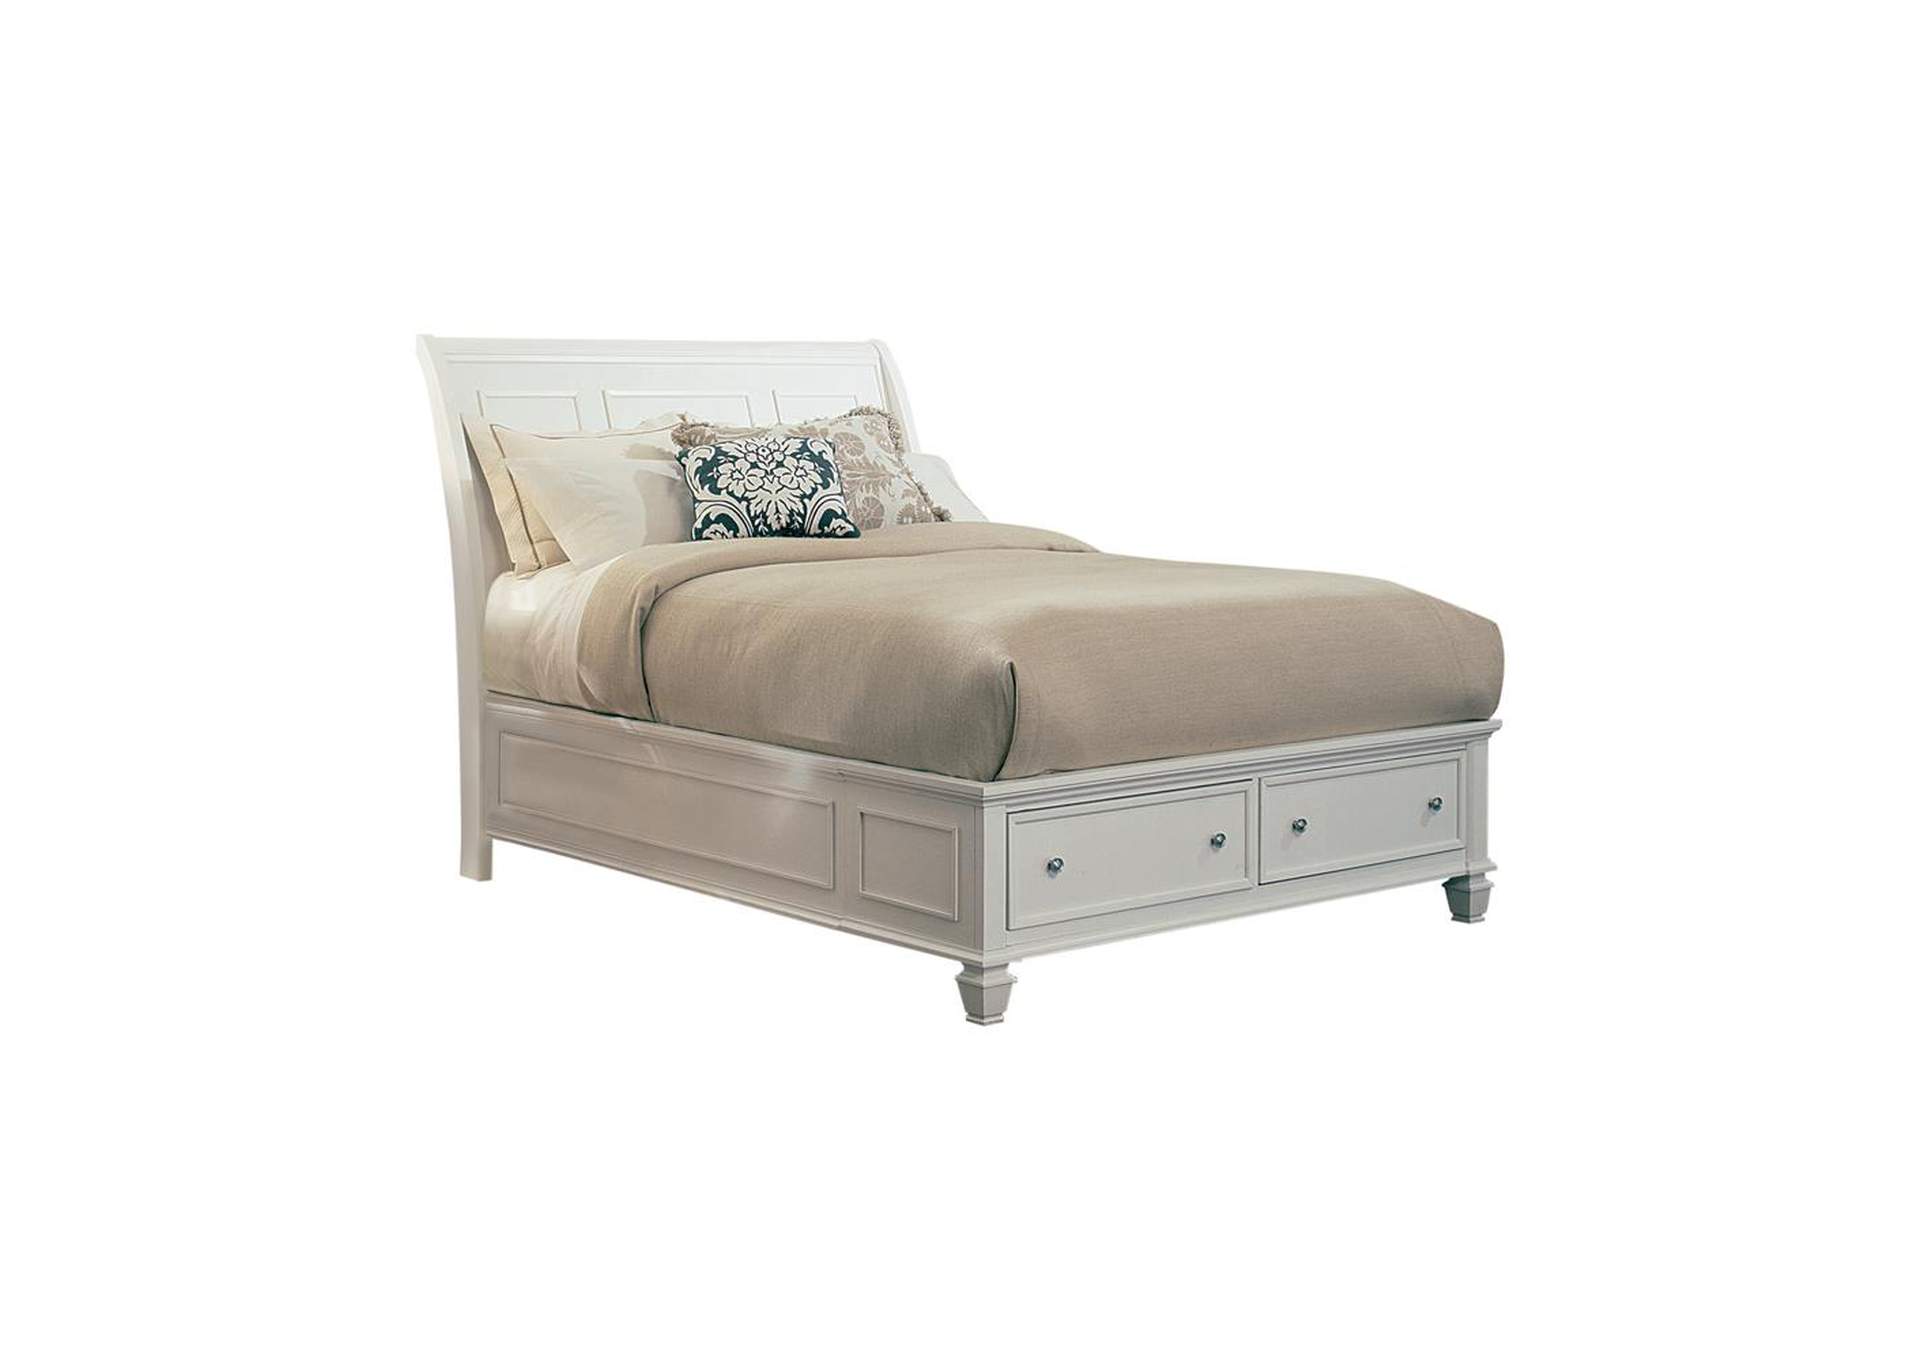 Sandy Beach White Queen Sleigh Bed W/ Footboard Storage,Coaster Furniture